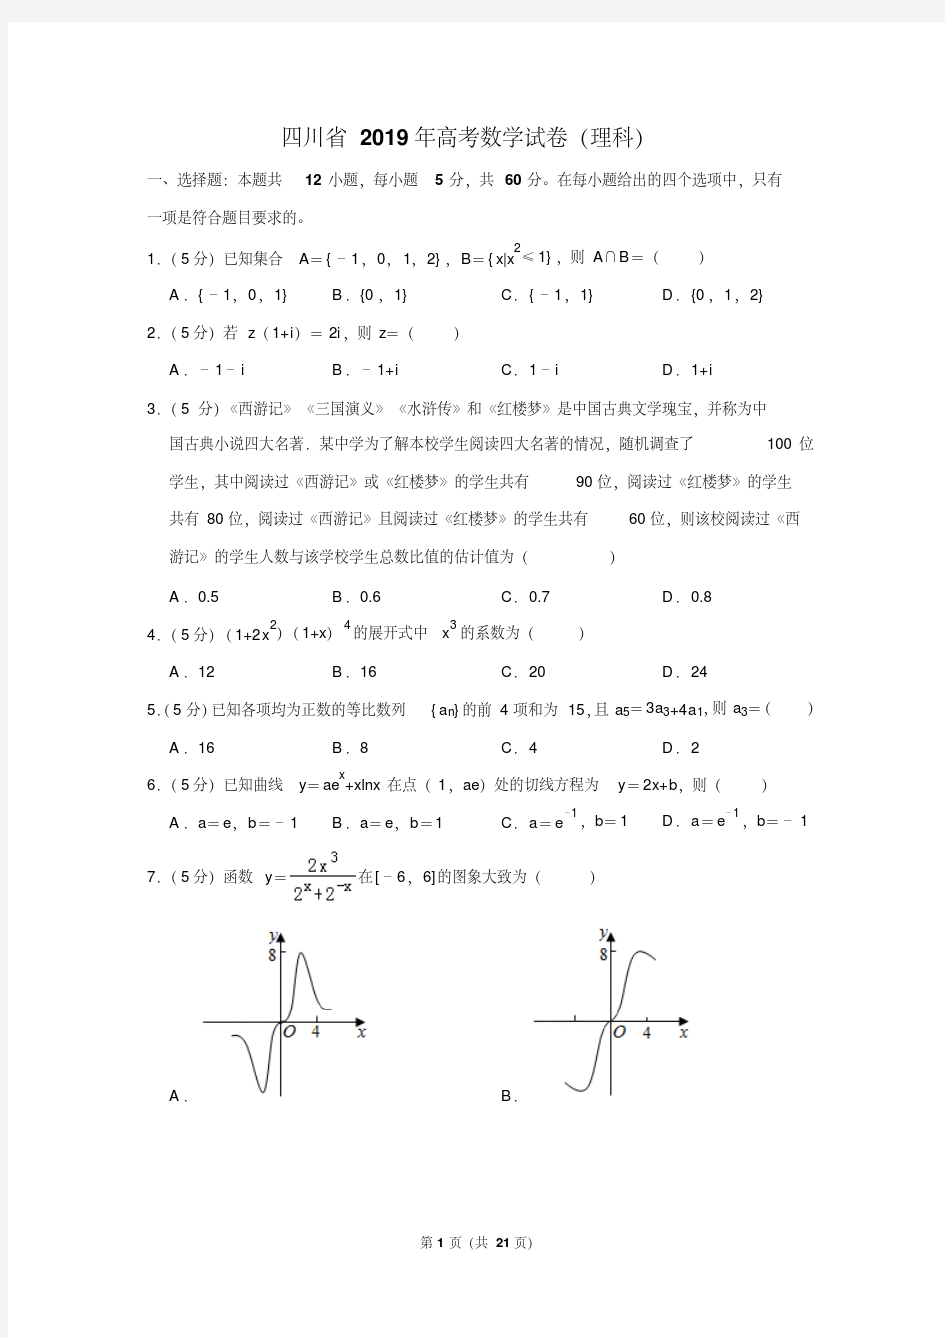 四川省2019年高考数学试卷(理科)以及答案解析(2020